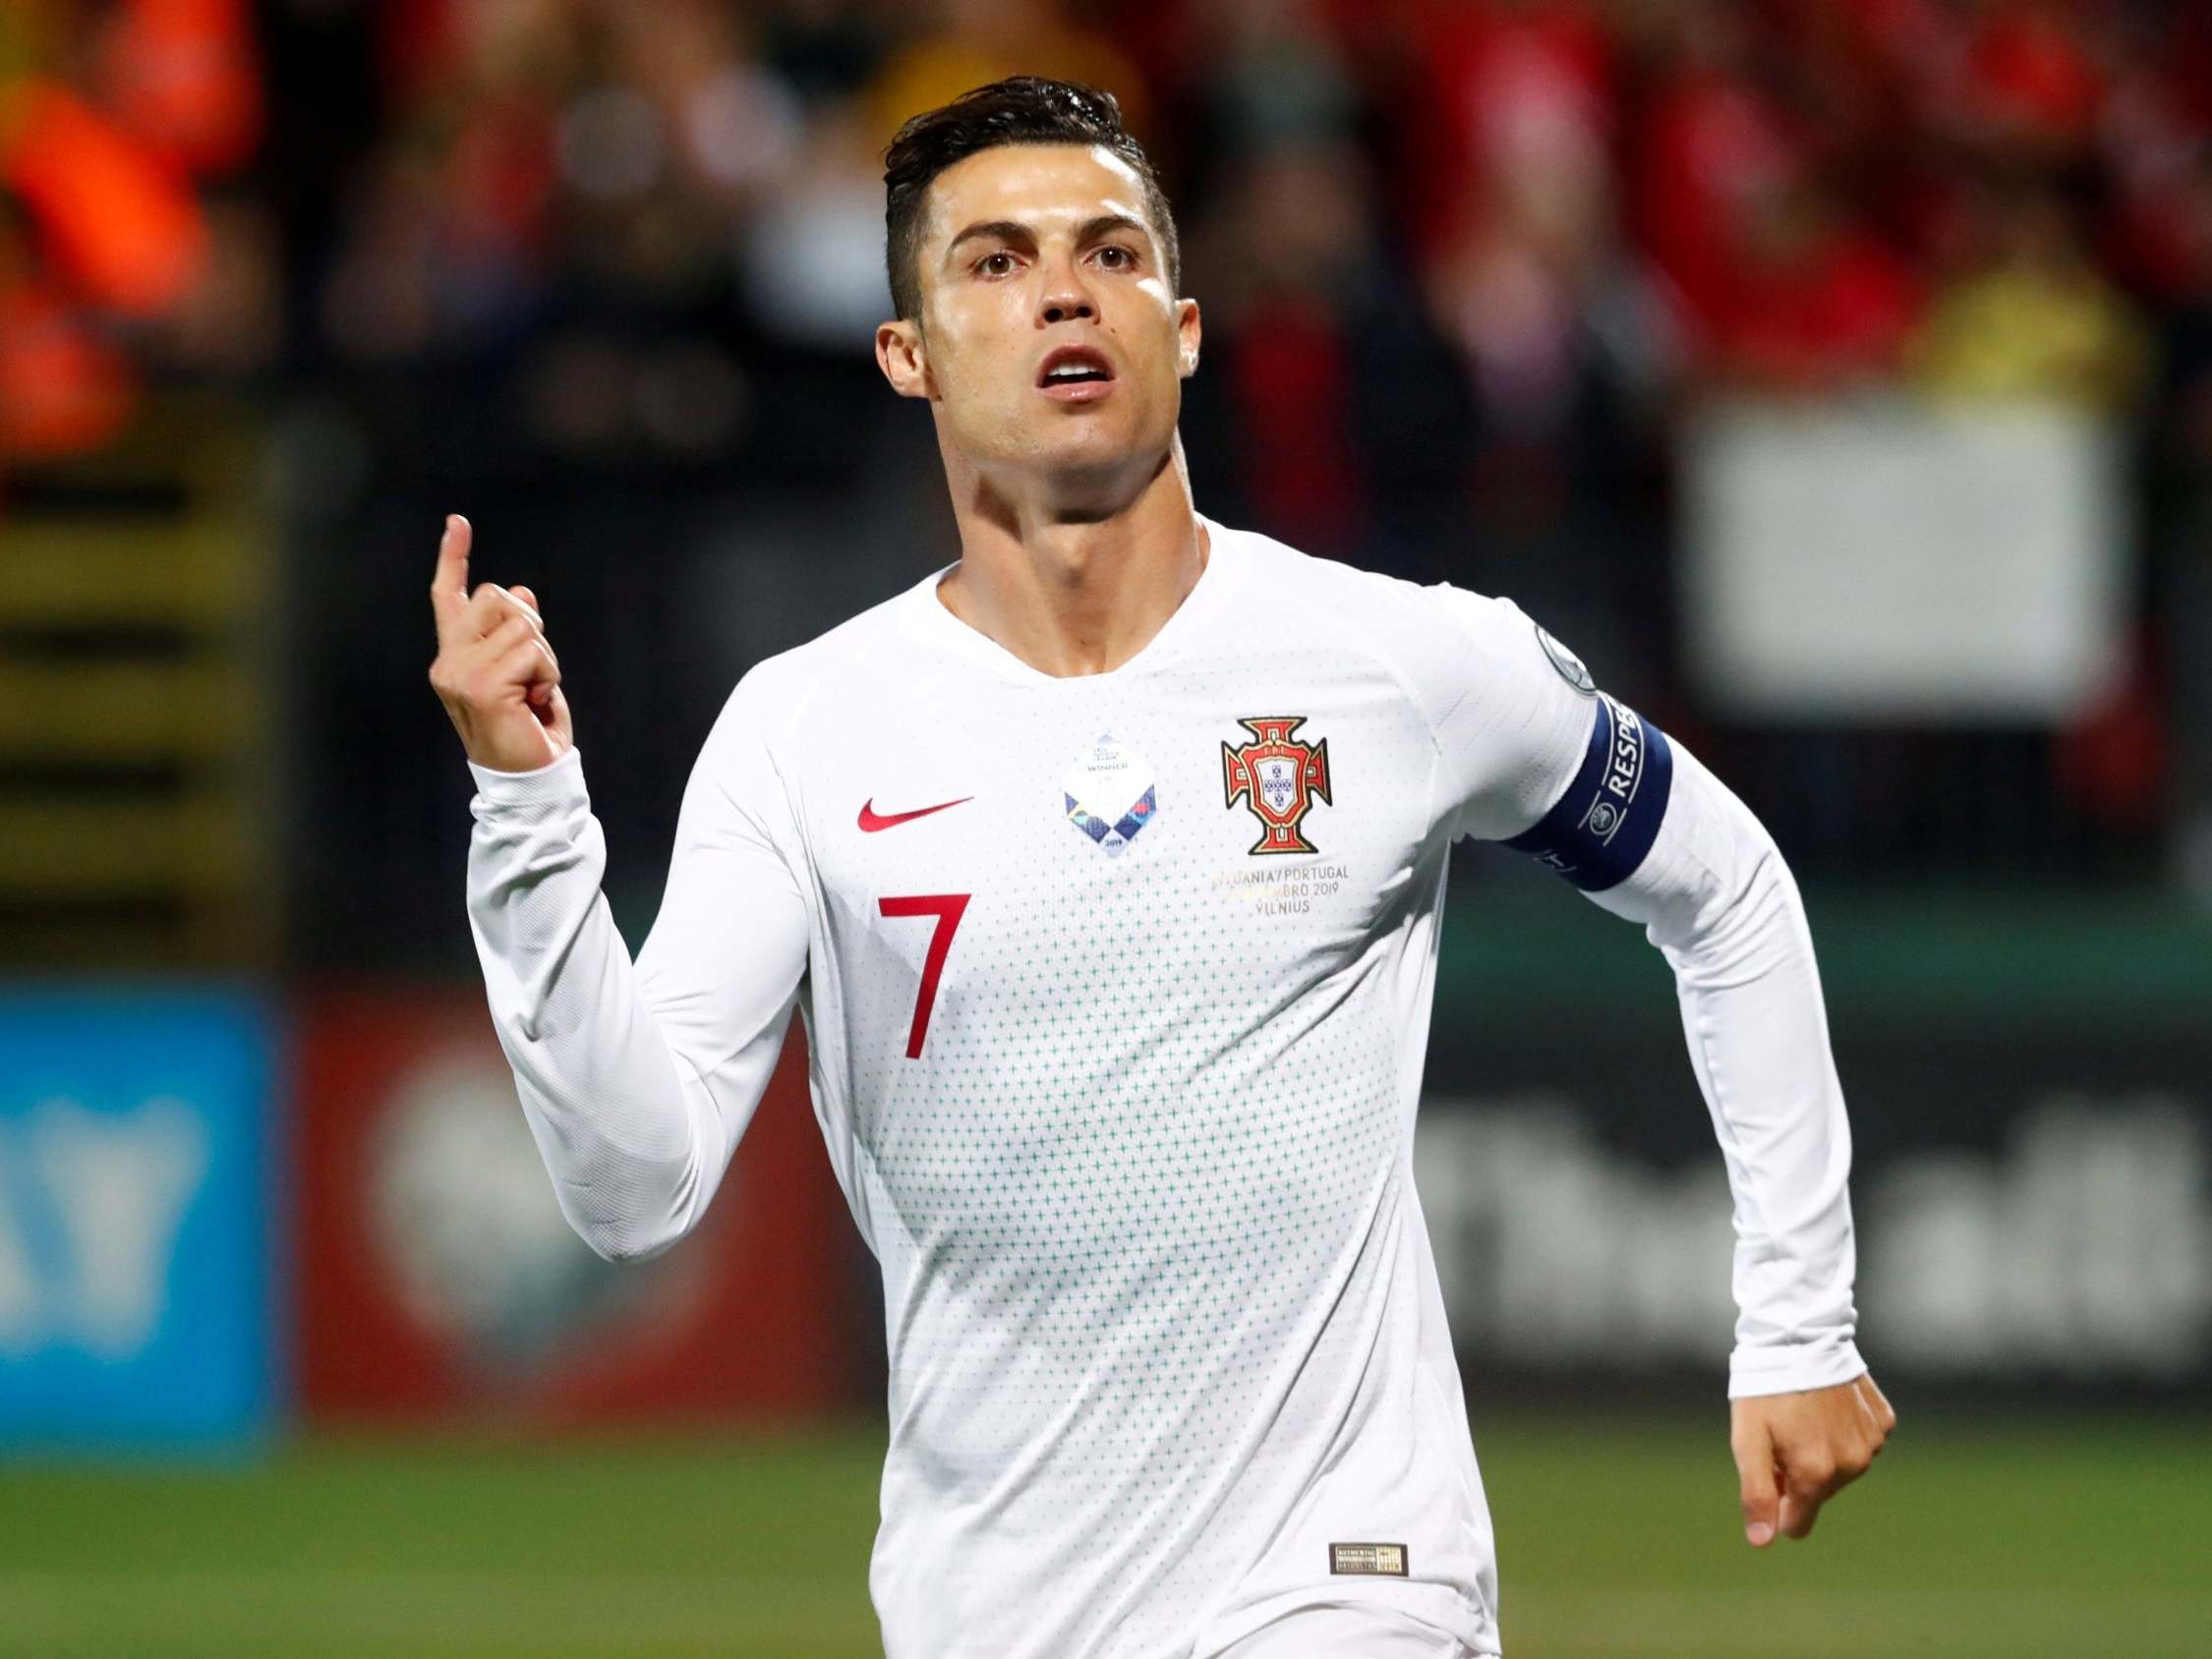 Ronaldo nhắc lại những thành tựu đã đạt trong sự nghiệp của mình